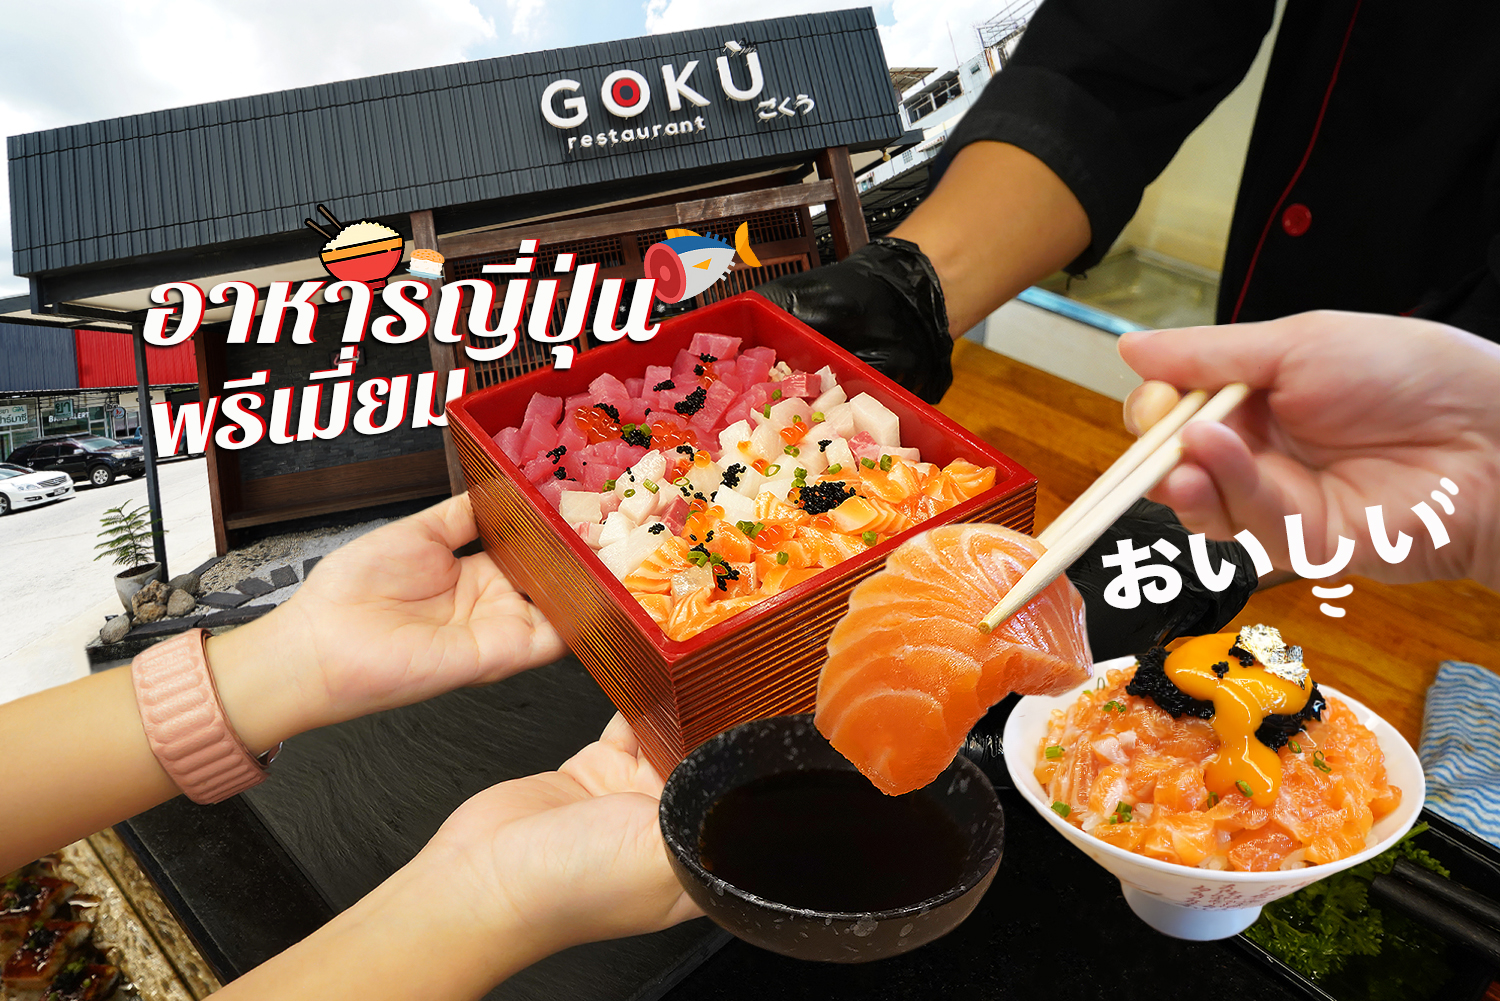 กลับมาแล้น GOKU Restaurant ร้านอาหารญี่ปุ่นพรีเมี่ยมย่านรังสิต โปรโมชั่นเด็ด ข้าวด้ง 1 แถม 1 ต้องไปกินแล้วหละ… อาหร่อย